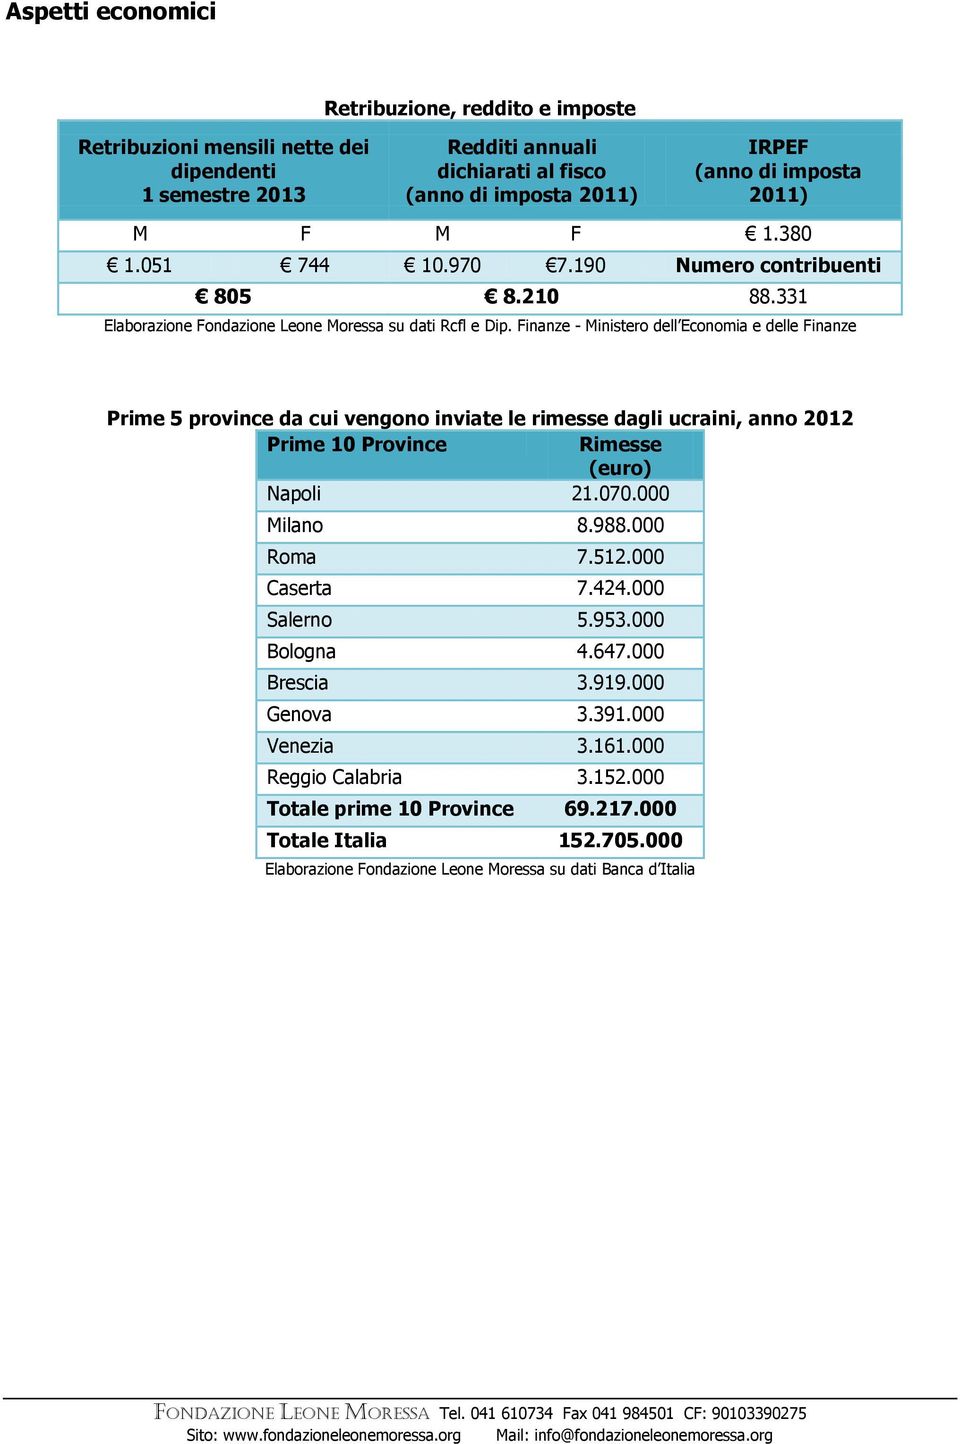 Finanze - Ministero dell Economia e delle Finanze Prime 5 province da cui vengono inviate le rimesse dagli, anno 2012 Prime 10 Province Rimesse (euro) Napoli 21.070.000 Milano 8.988.